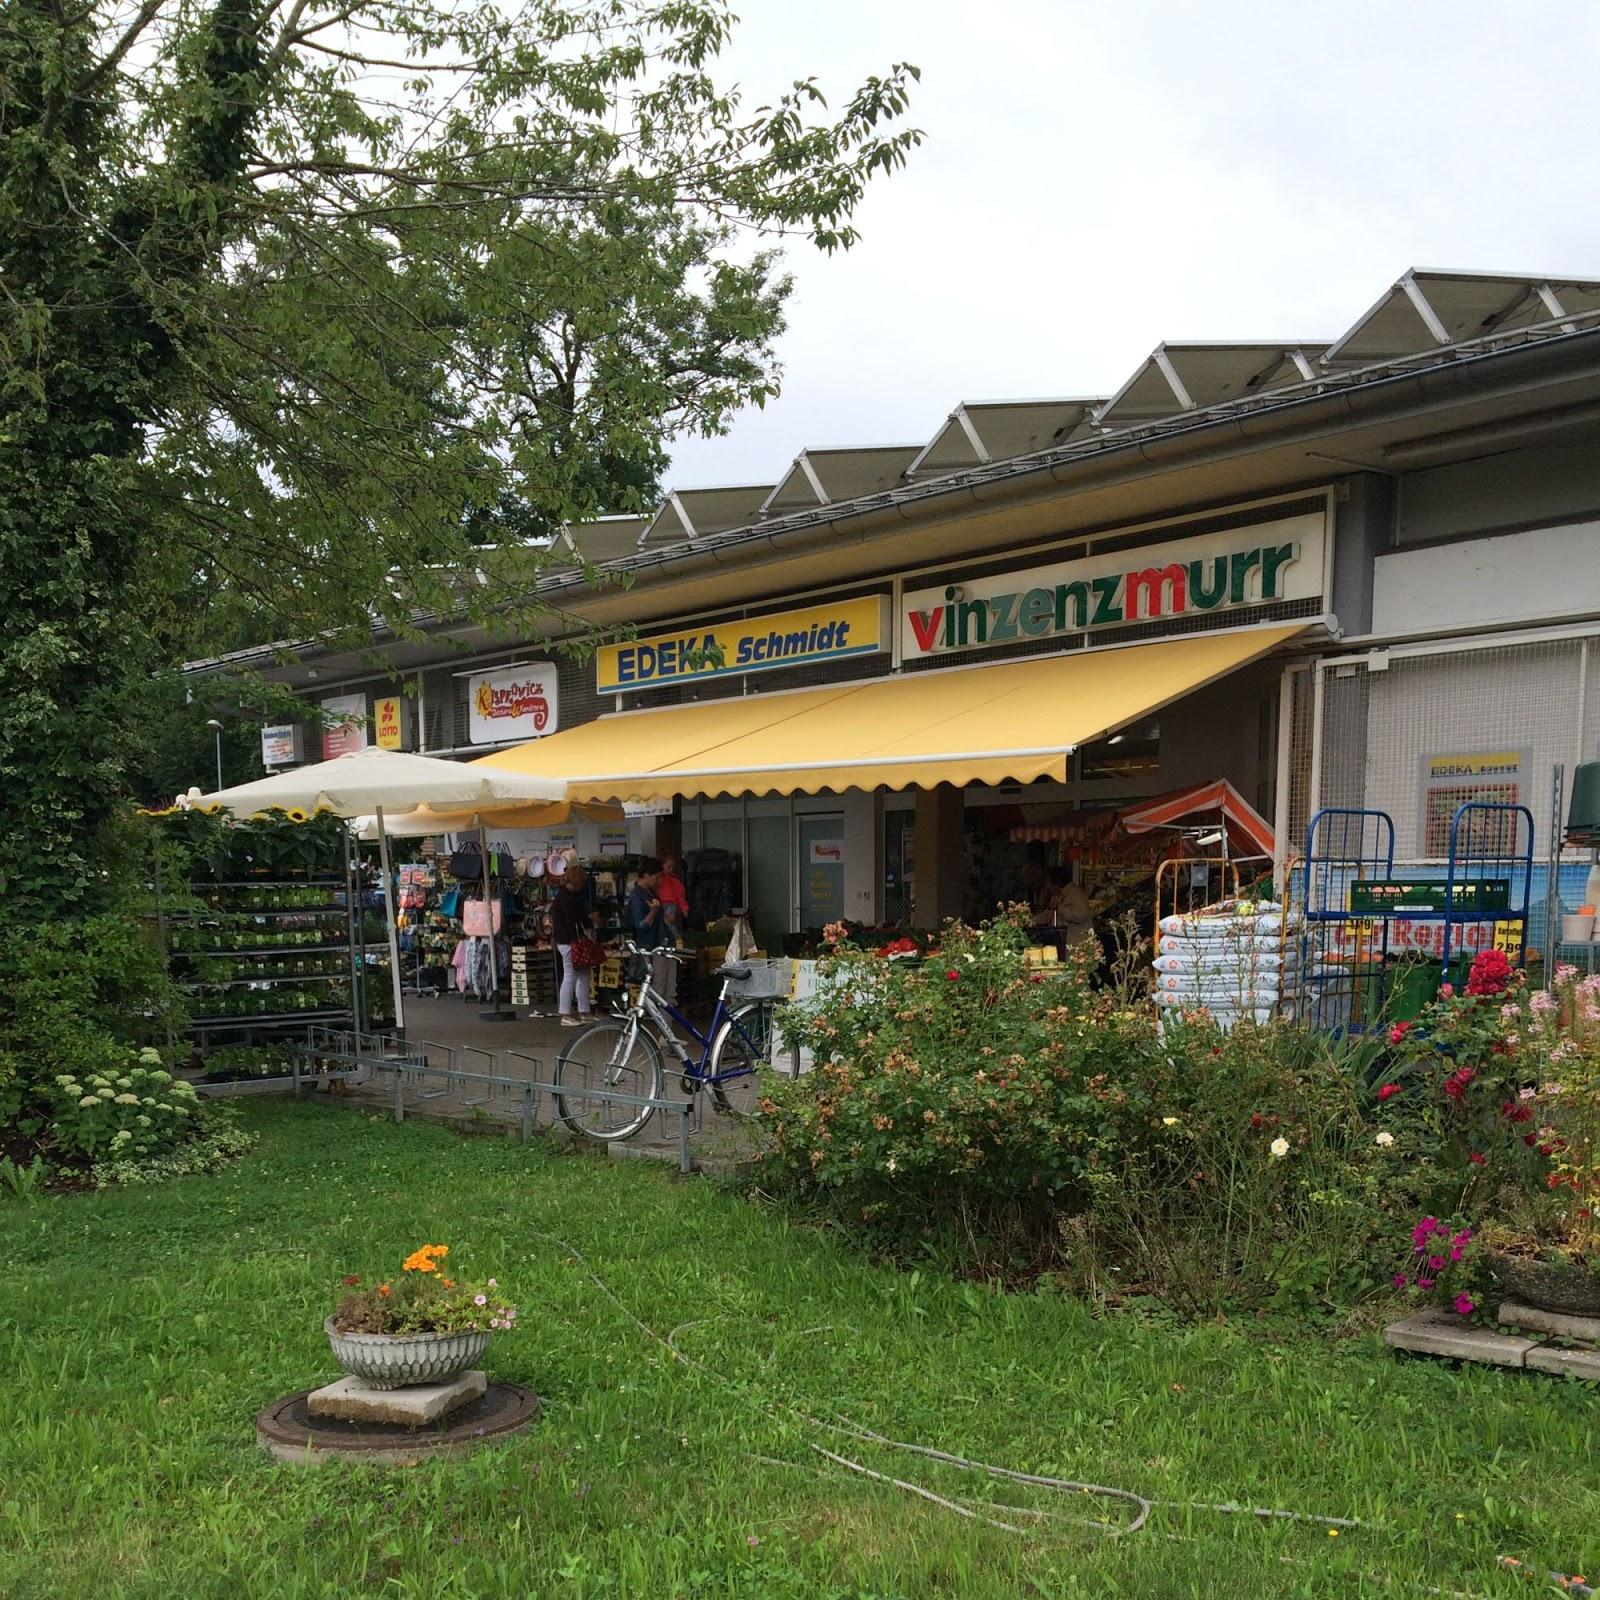 Restaurant "Vinzenzmurr Metzgerei -" in Schondorf am Ammersee